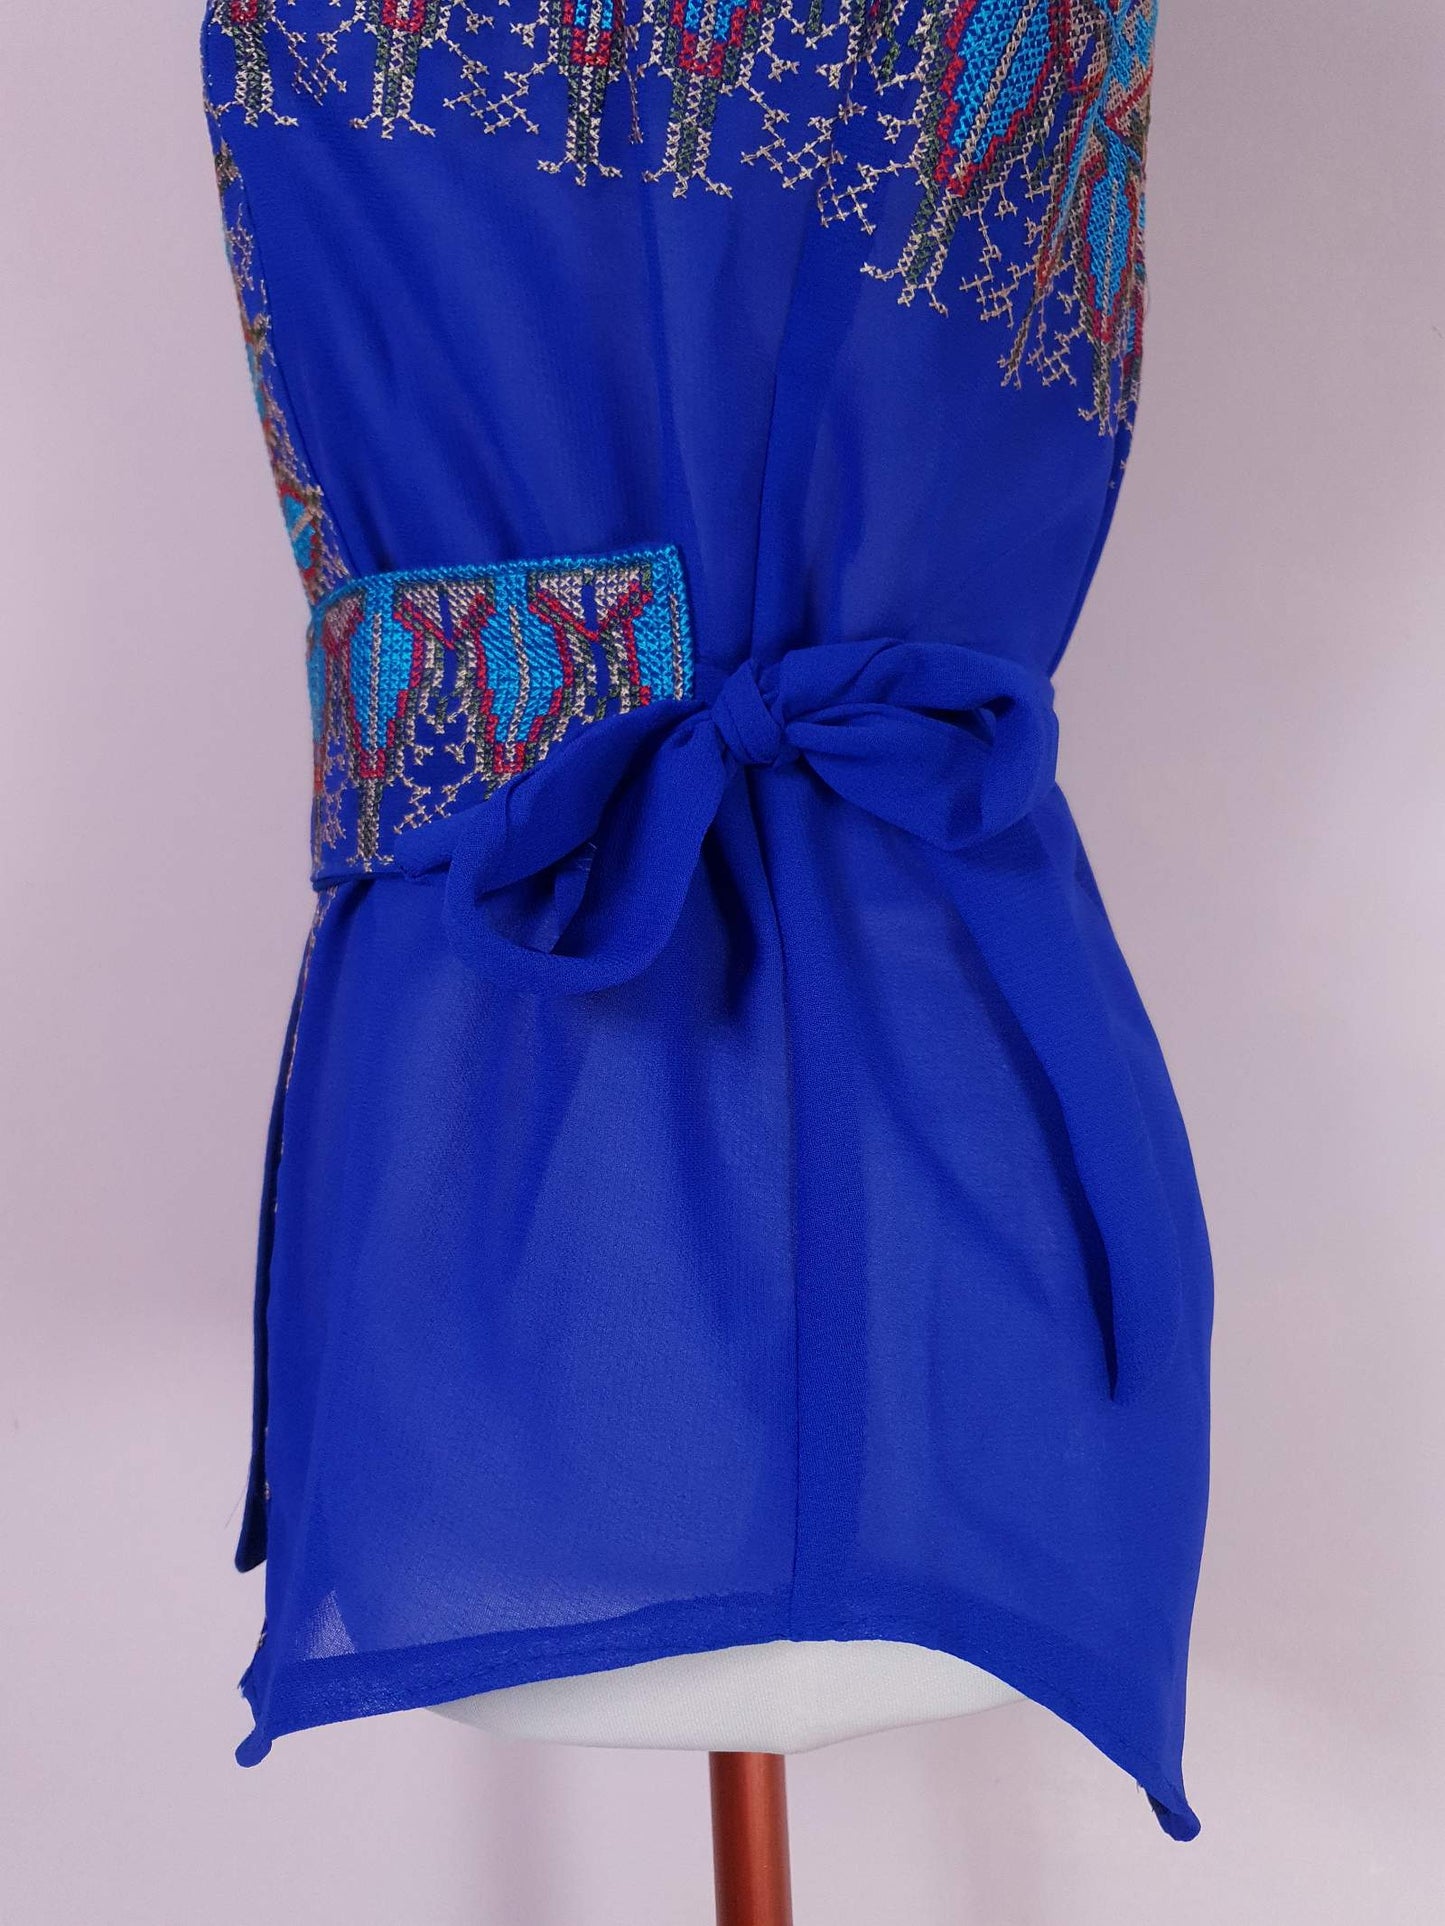 Beautiful Arabian 1970s Azure Blue Chiffon Cross Stitch Blouse Top with Belt - Size 12